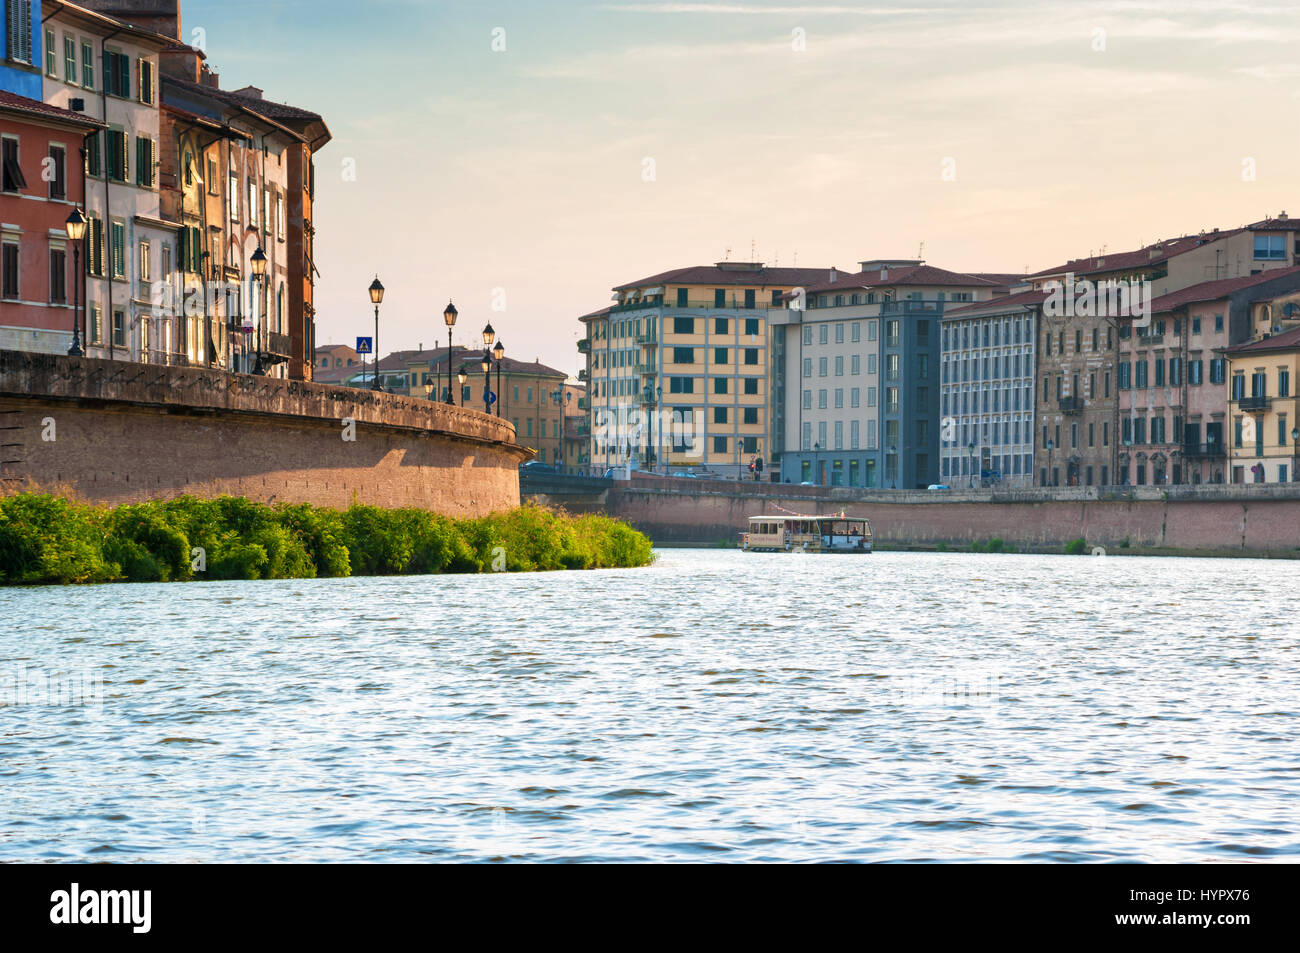 River Arno in Pisa, Italy Stock Photo